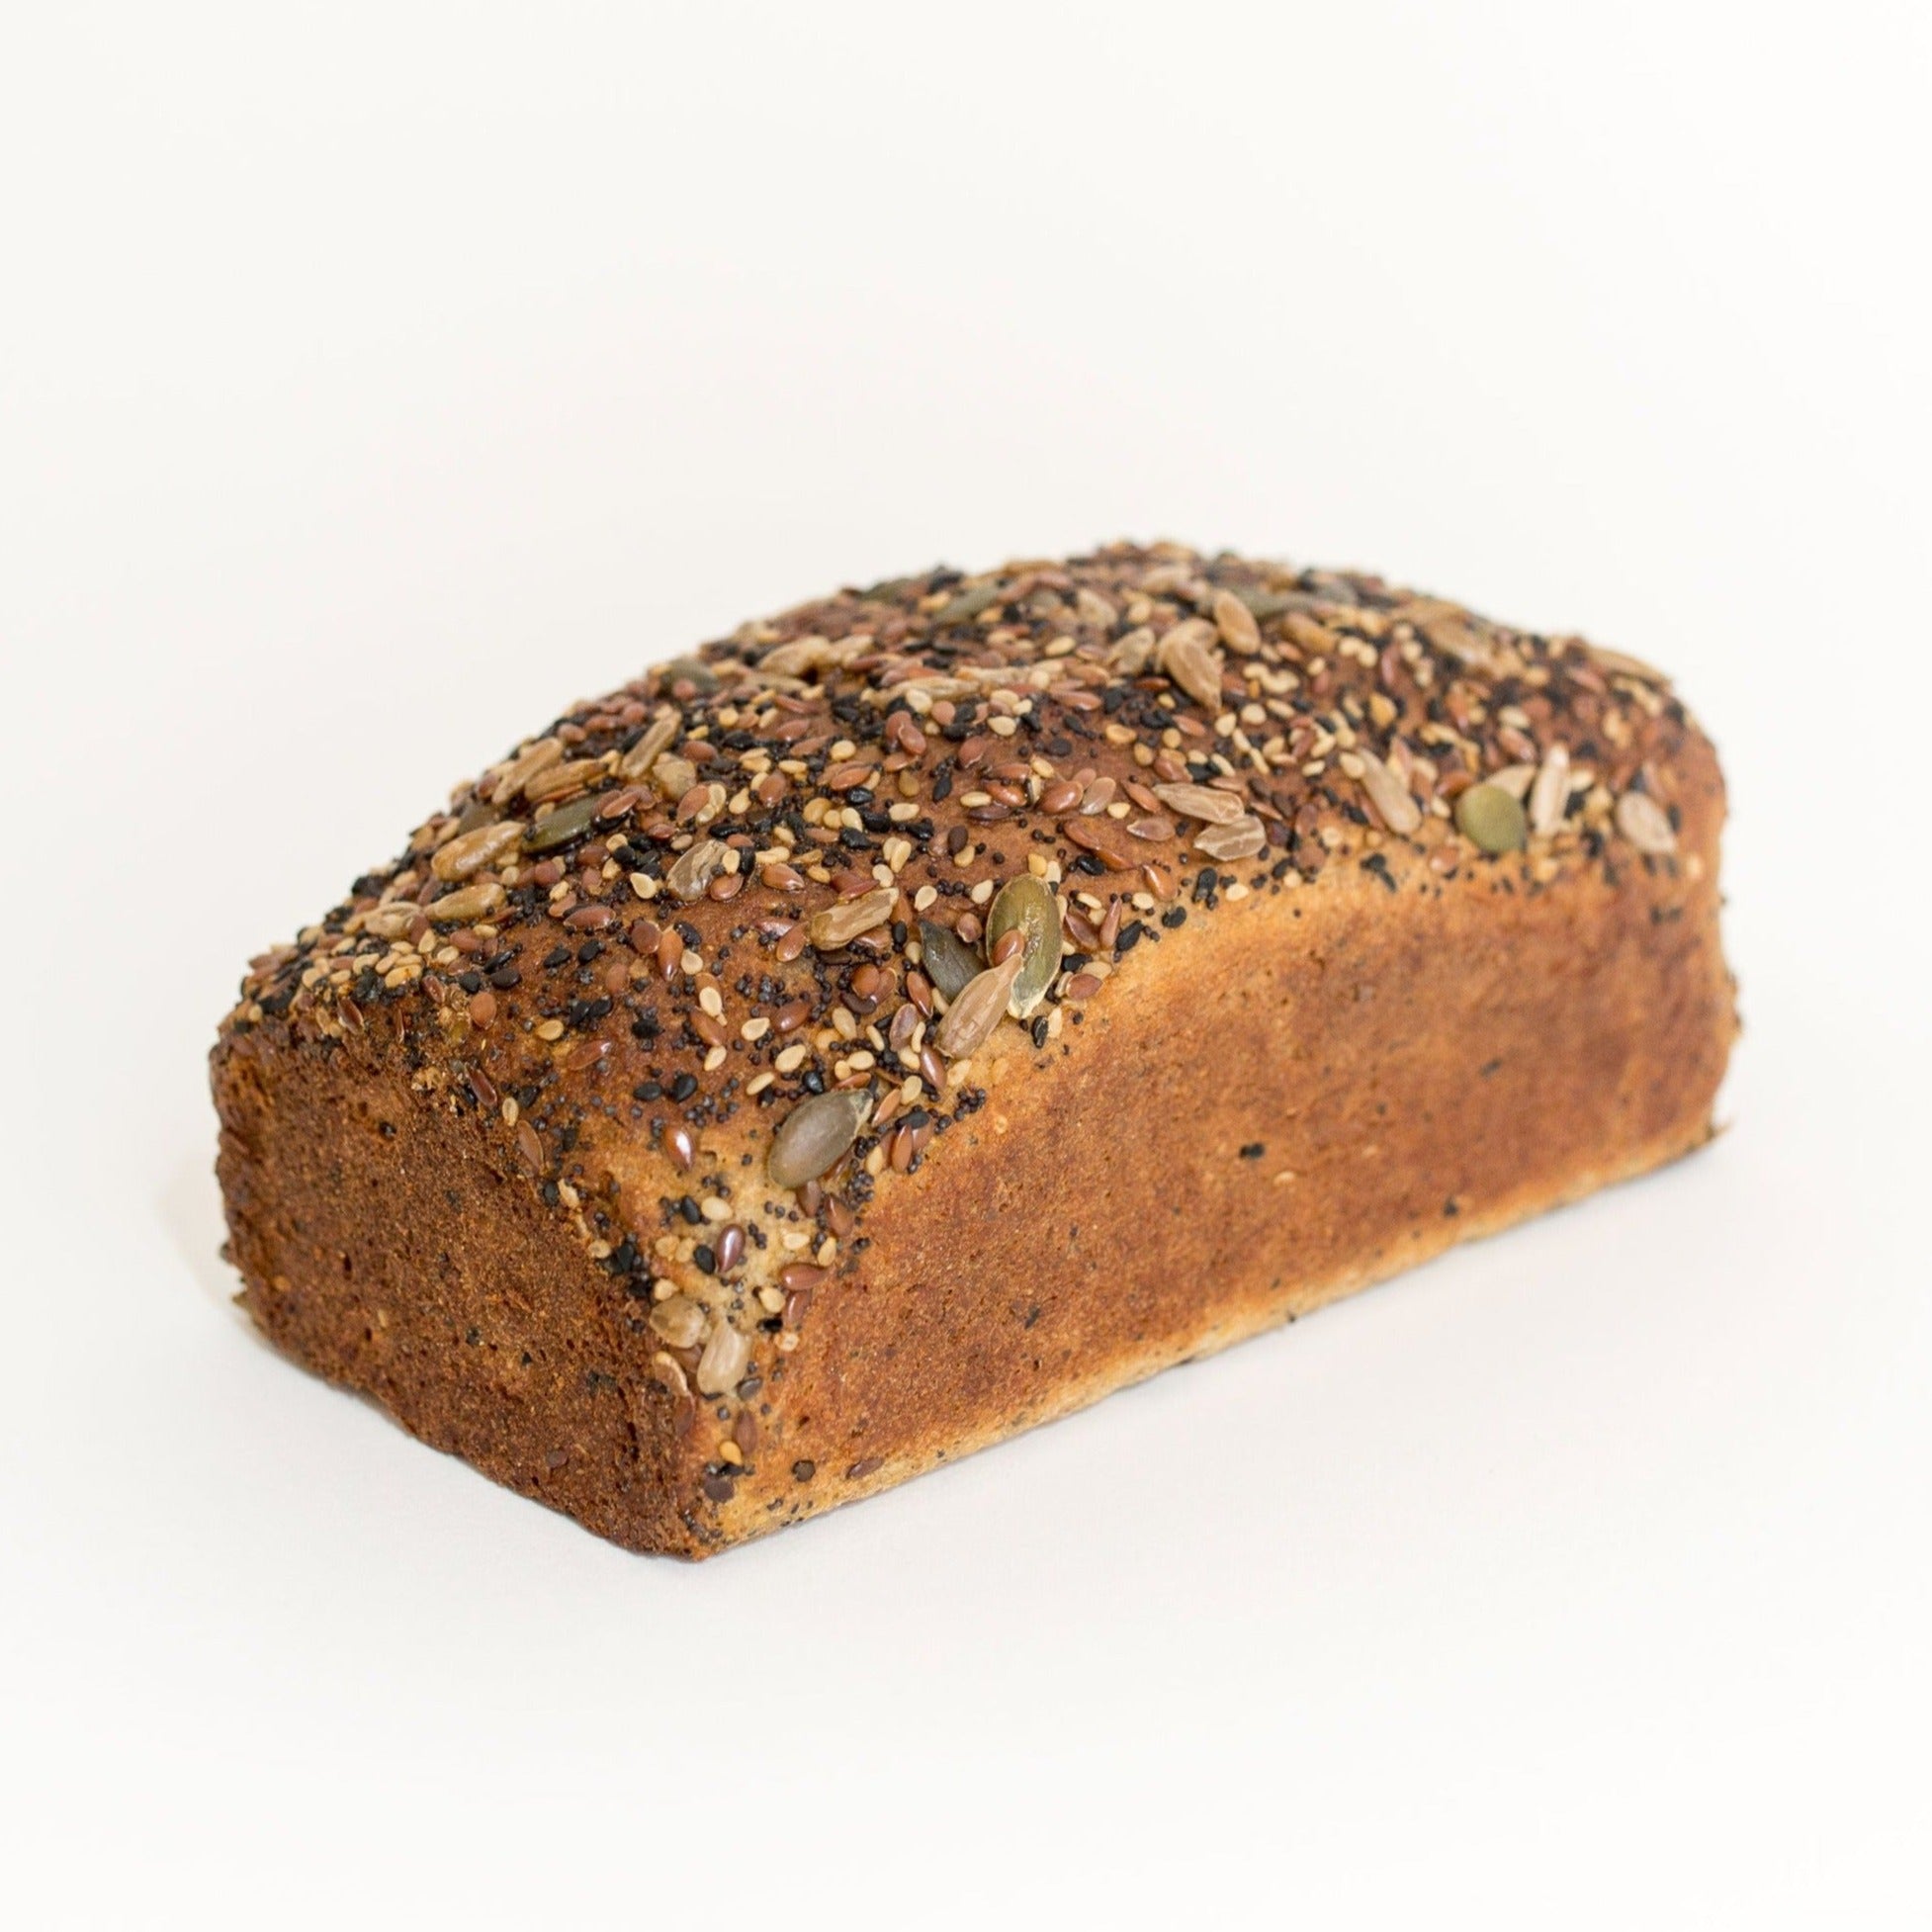 Pan de semillas sin gluten bajo en carbohidratos